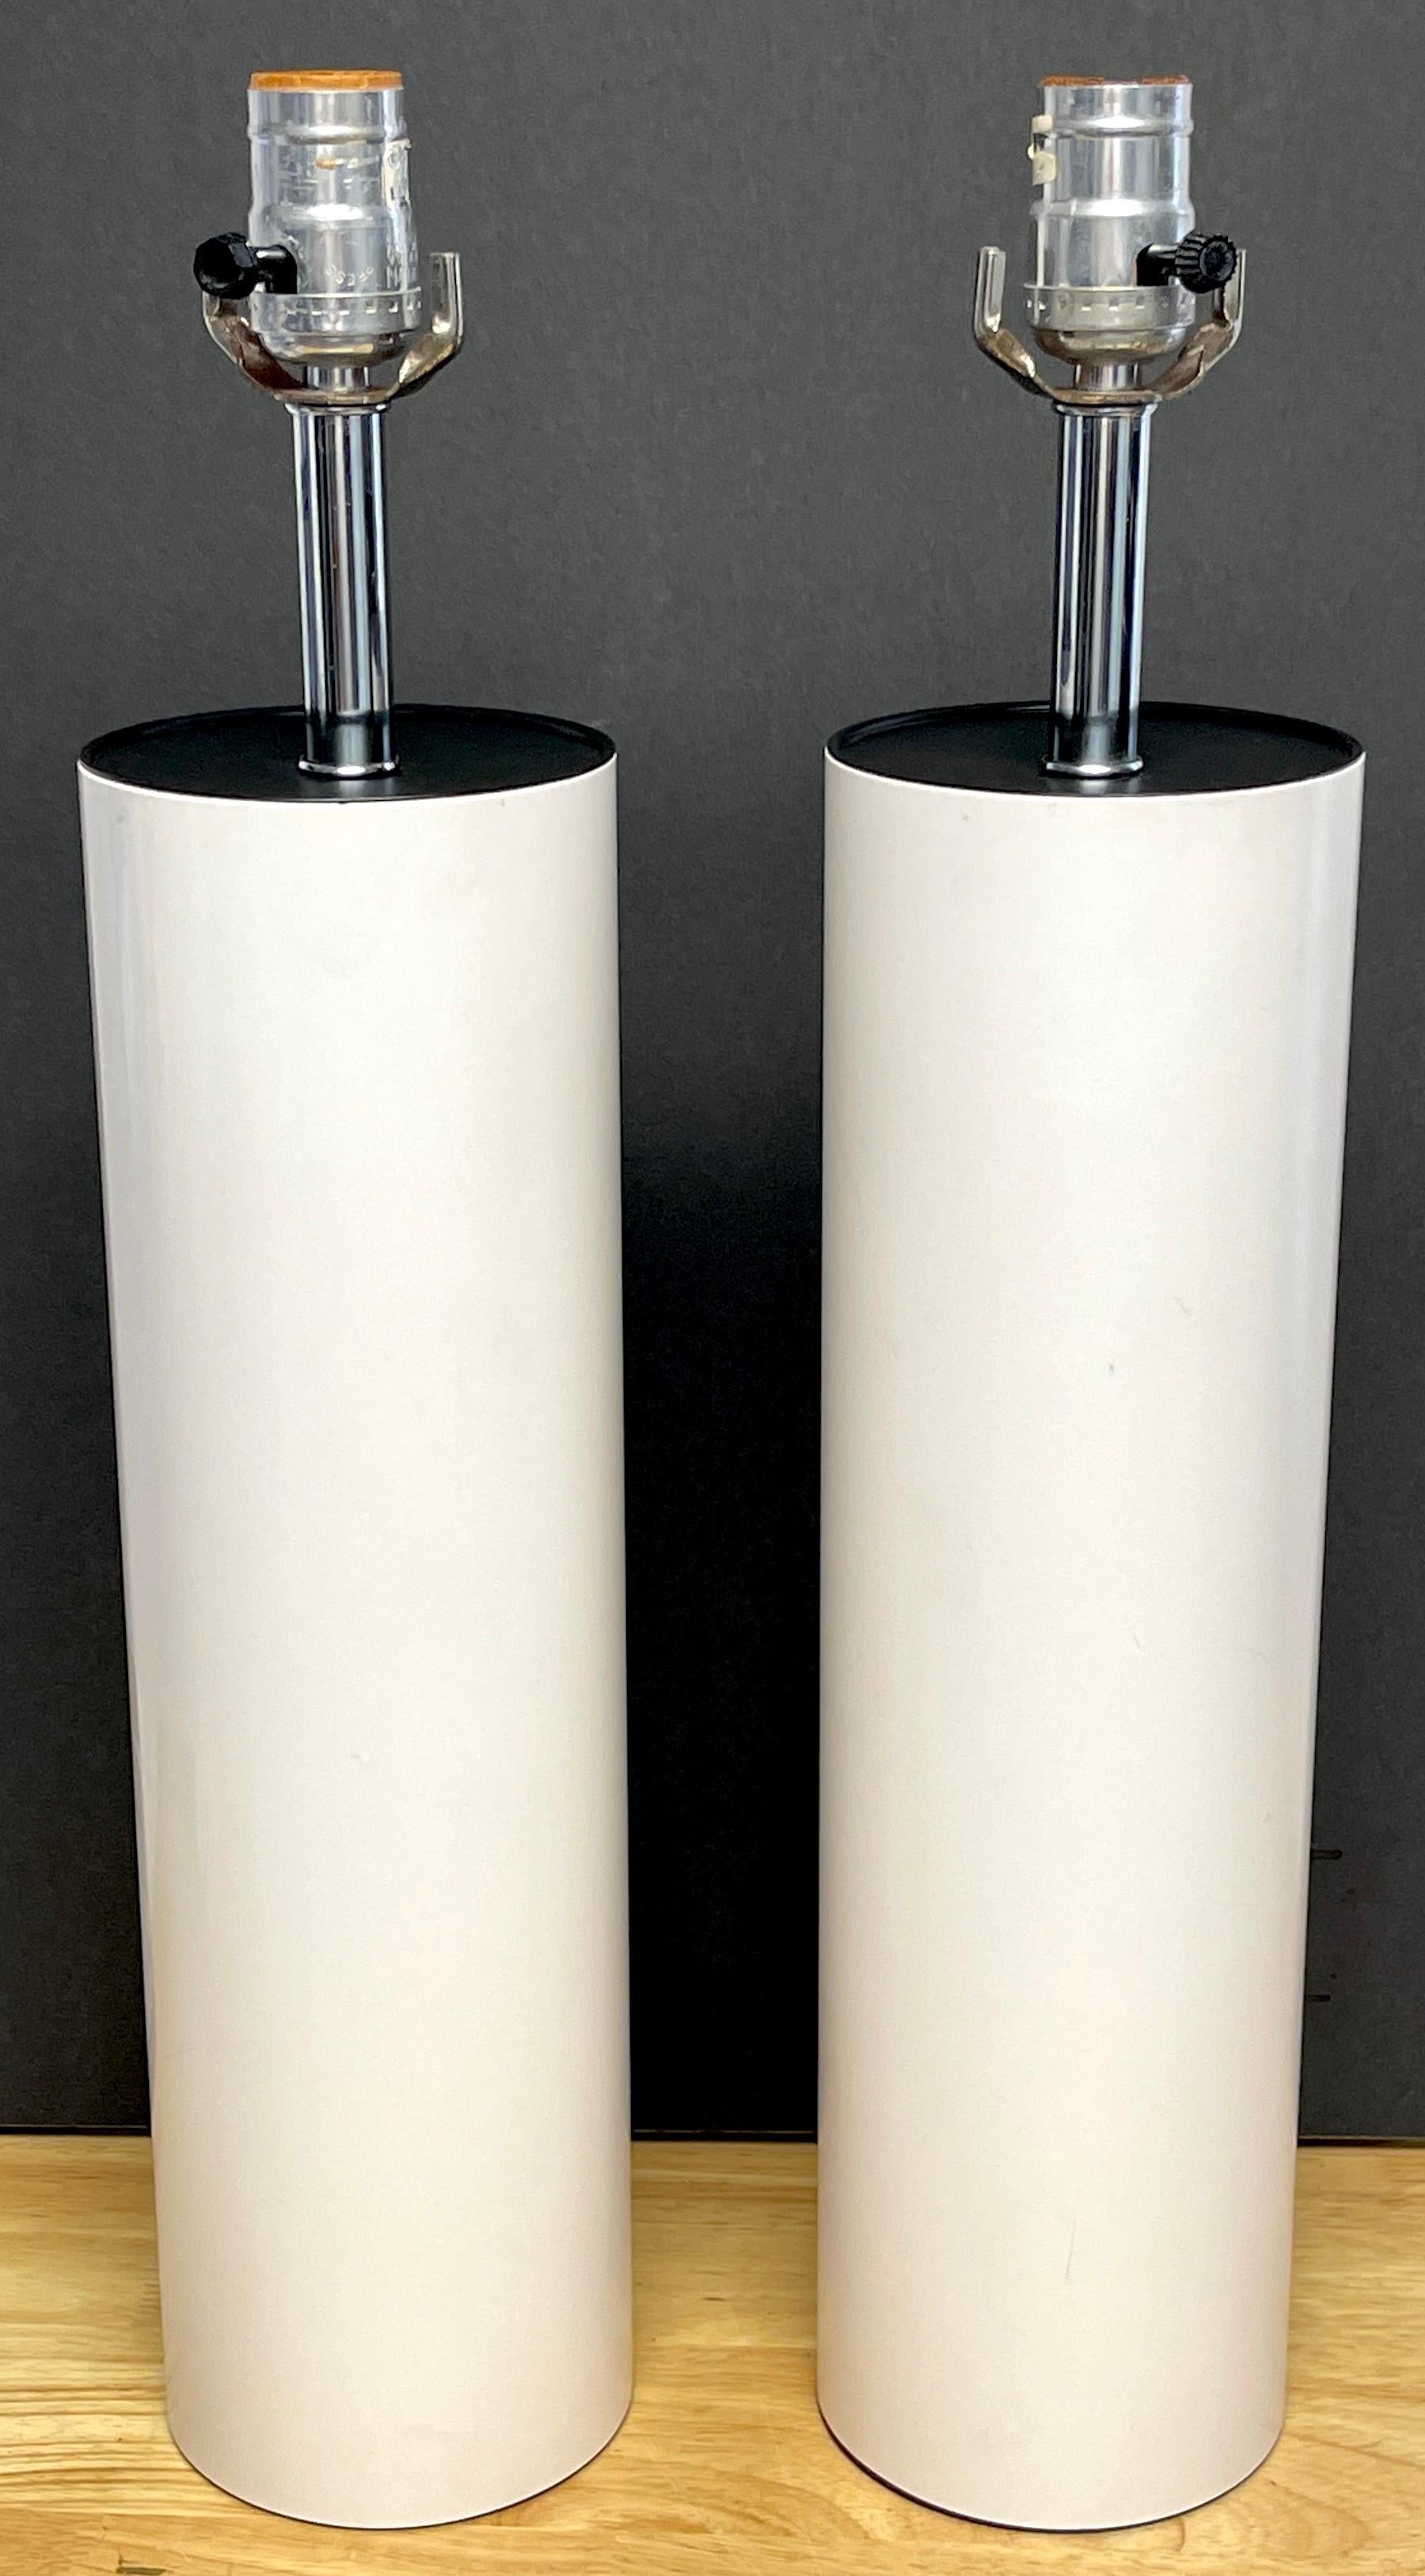 Paar MCM Walter von Nessen hohe weiß emaillierte Säulenlampen
Minimalistisches Design mit einem Durchmesser von 4,5 Zoll und einer Höhe von 16 Zoll bis zur Spitze der Säule und 22 Zoll bis zur Spitze des Sockels.
Die Lampen sind neu verkabelt.
 